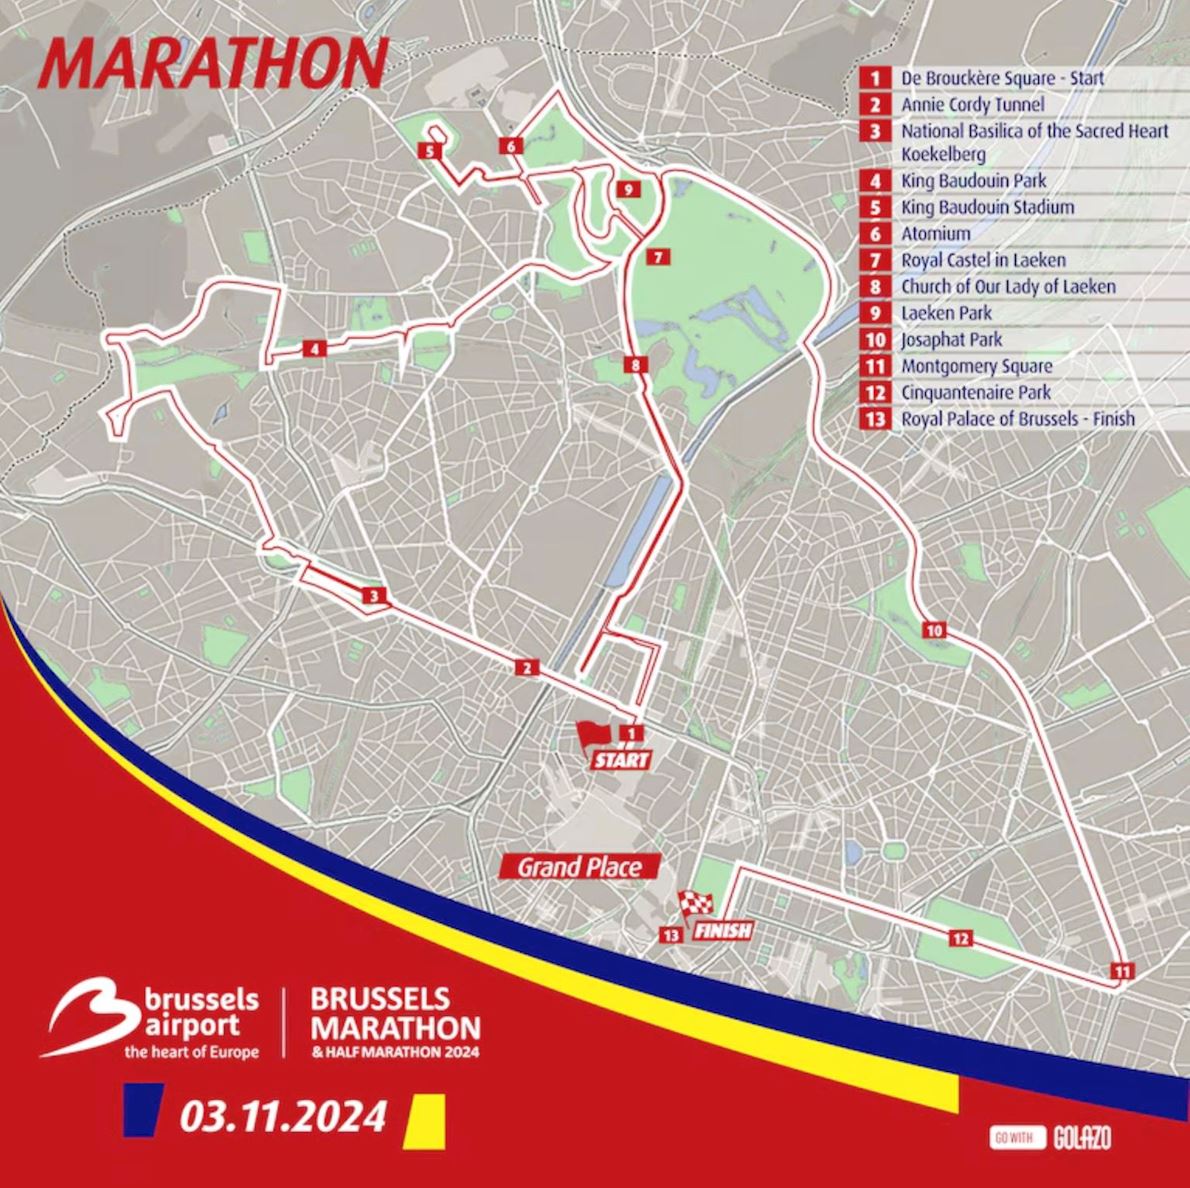 Brussels Airport Brussels Marathon & Half Marathon 路线图